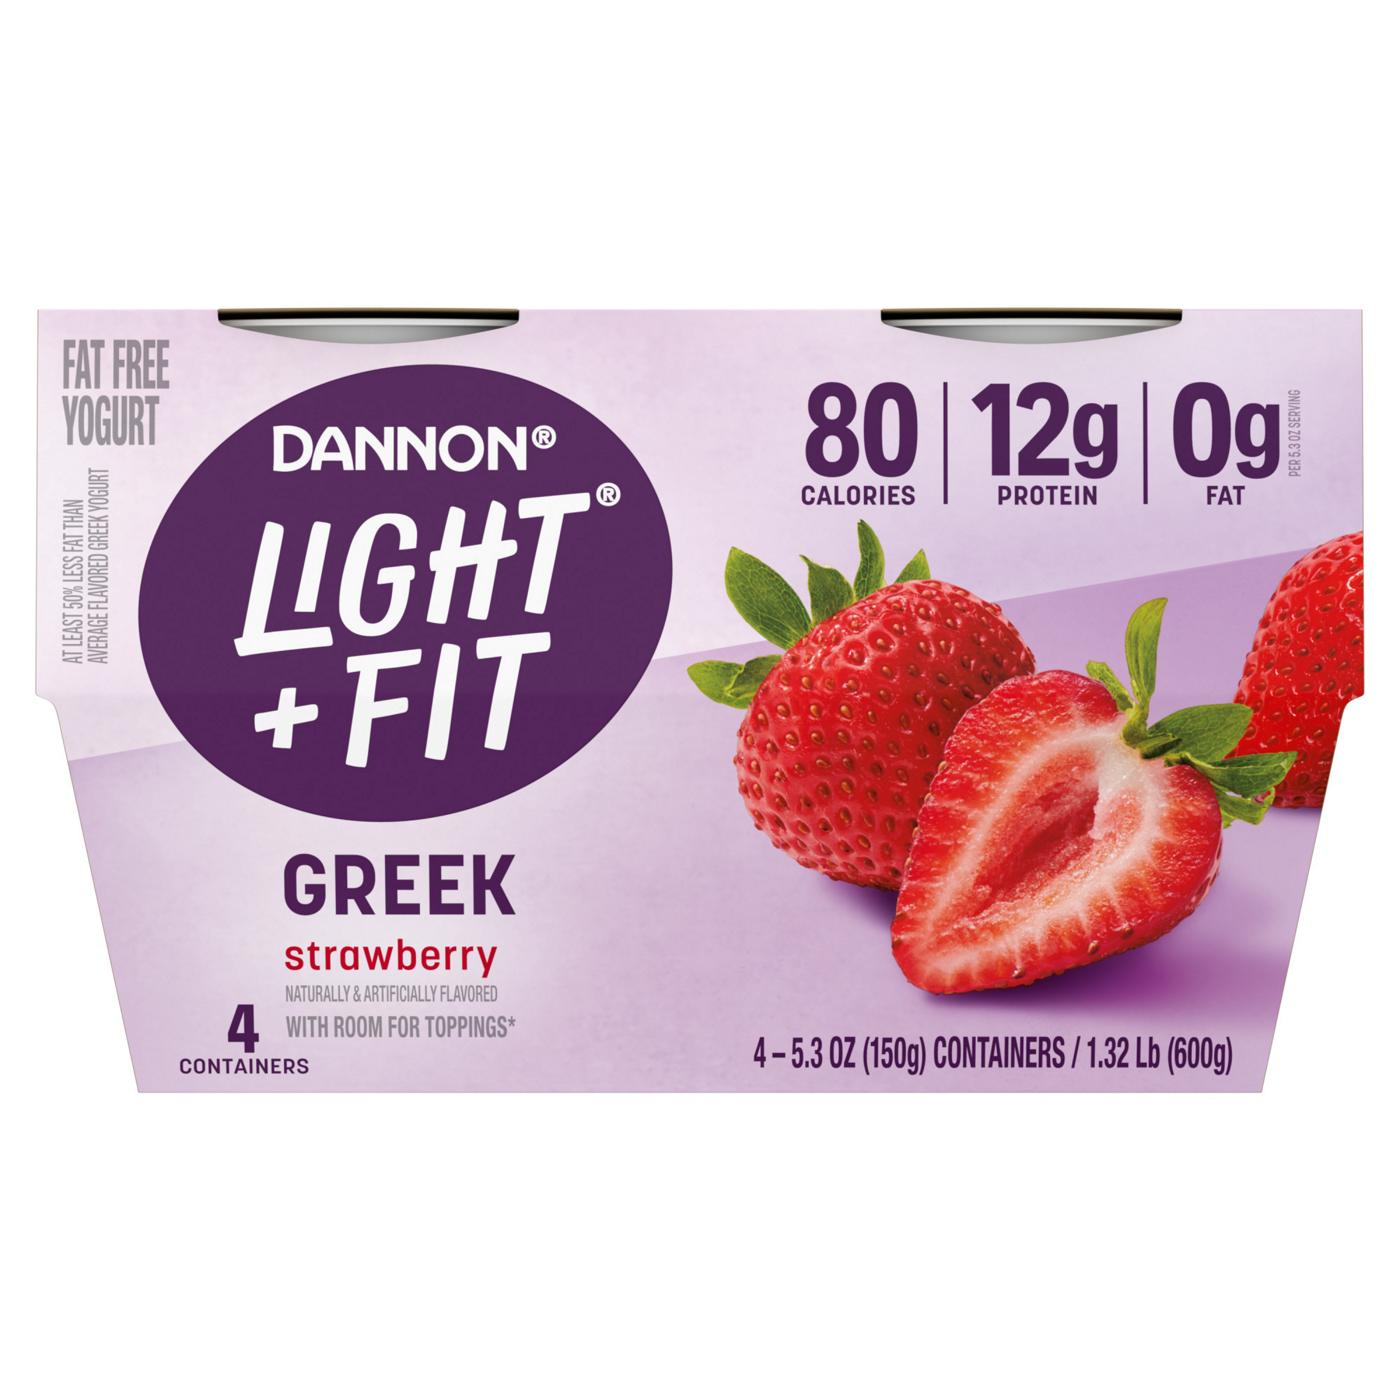 Fit Greek Strawberry Fat Free Yogurt